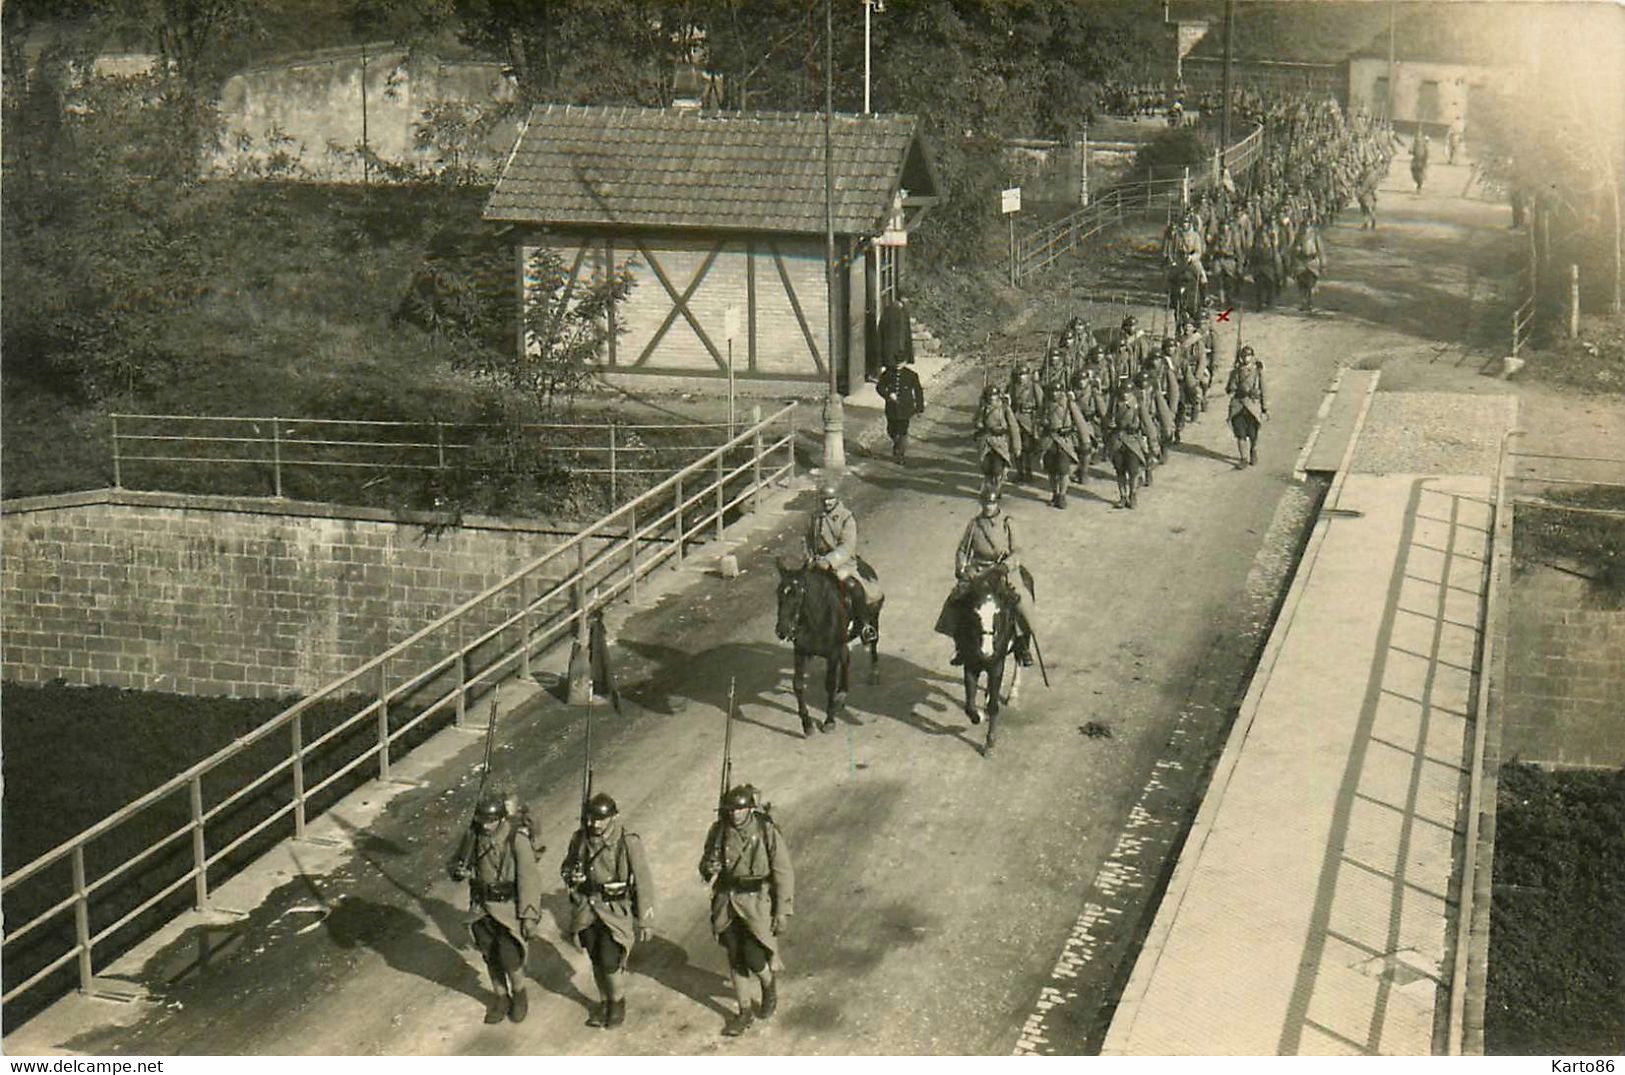 Neuf Brisach * Carte Photo * Le Passage Des Troupes Sur Le Pont * Bureau De L'octroi * Militaire Militaria - Neuf Brisach